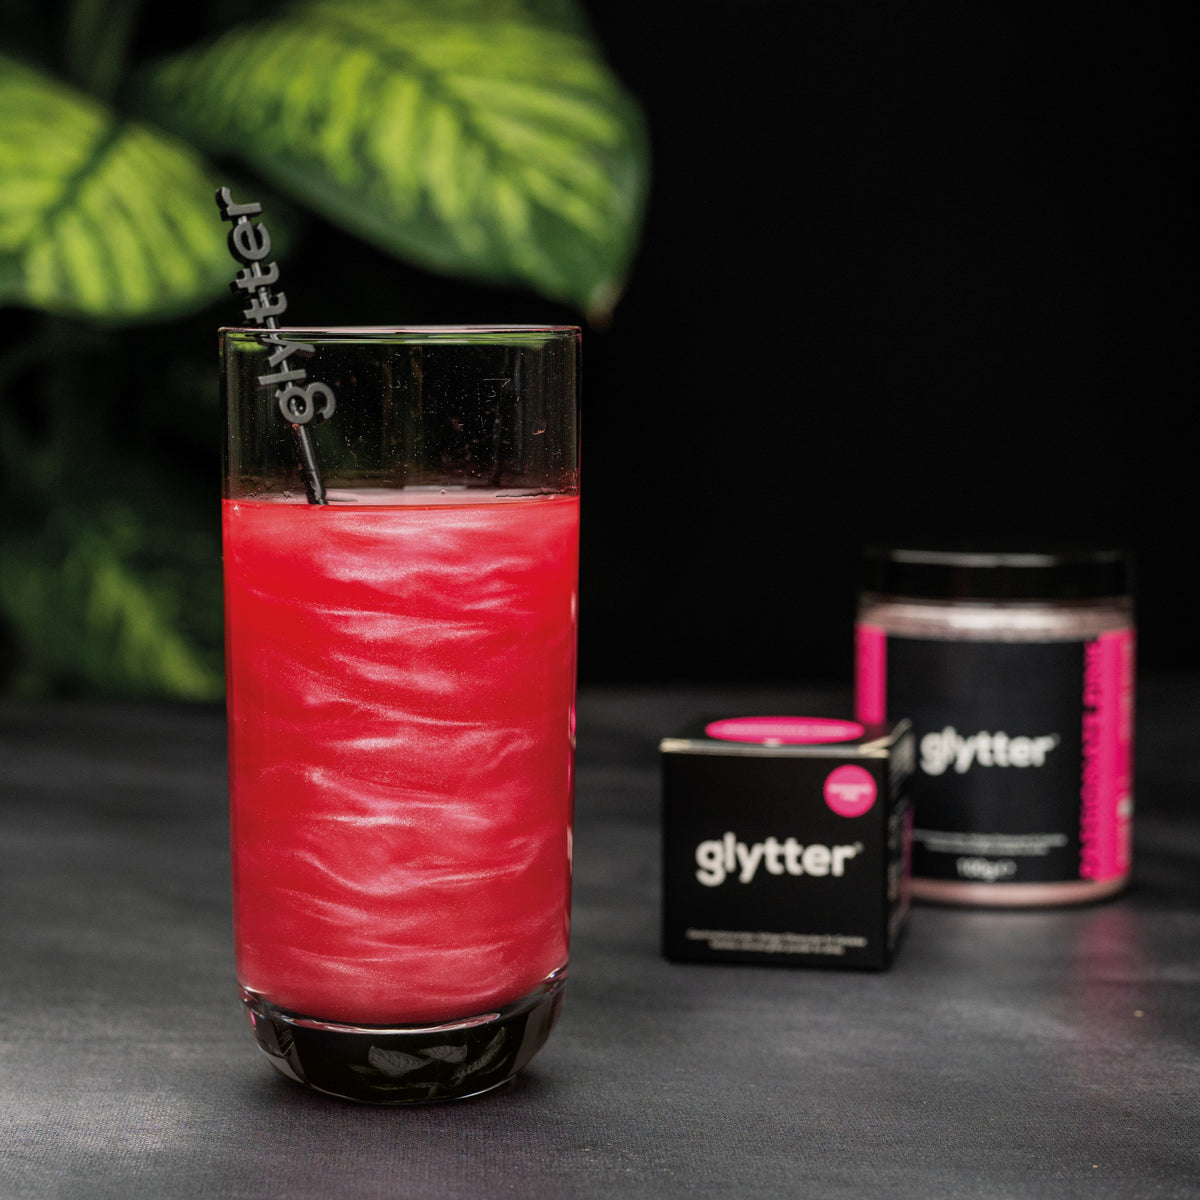 Glytterpulver - macht atemberaubenden Schimmer im Getränk - Pink (10g)